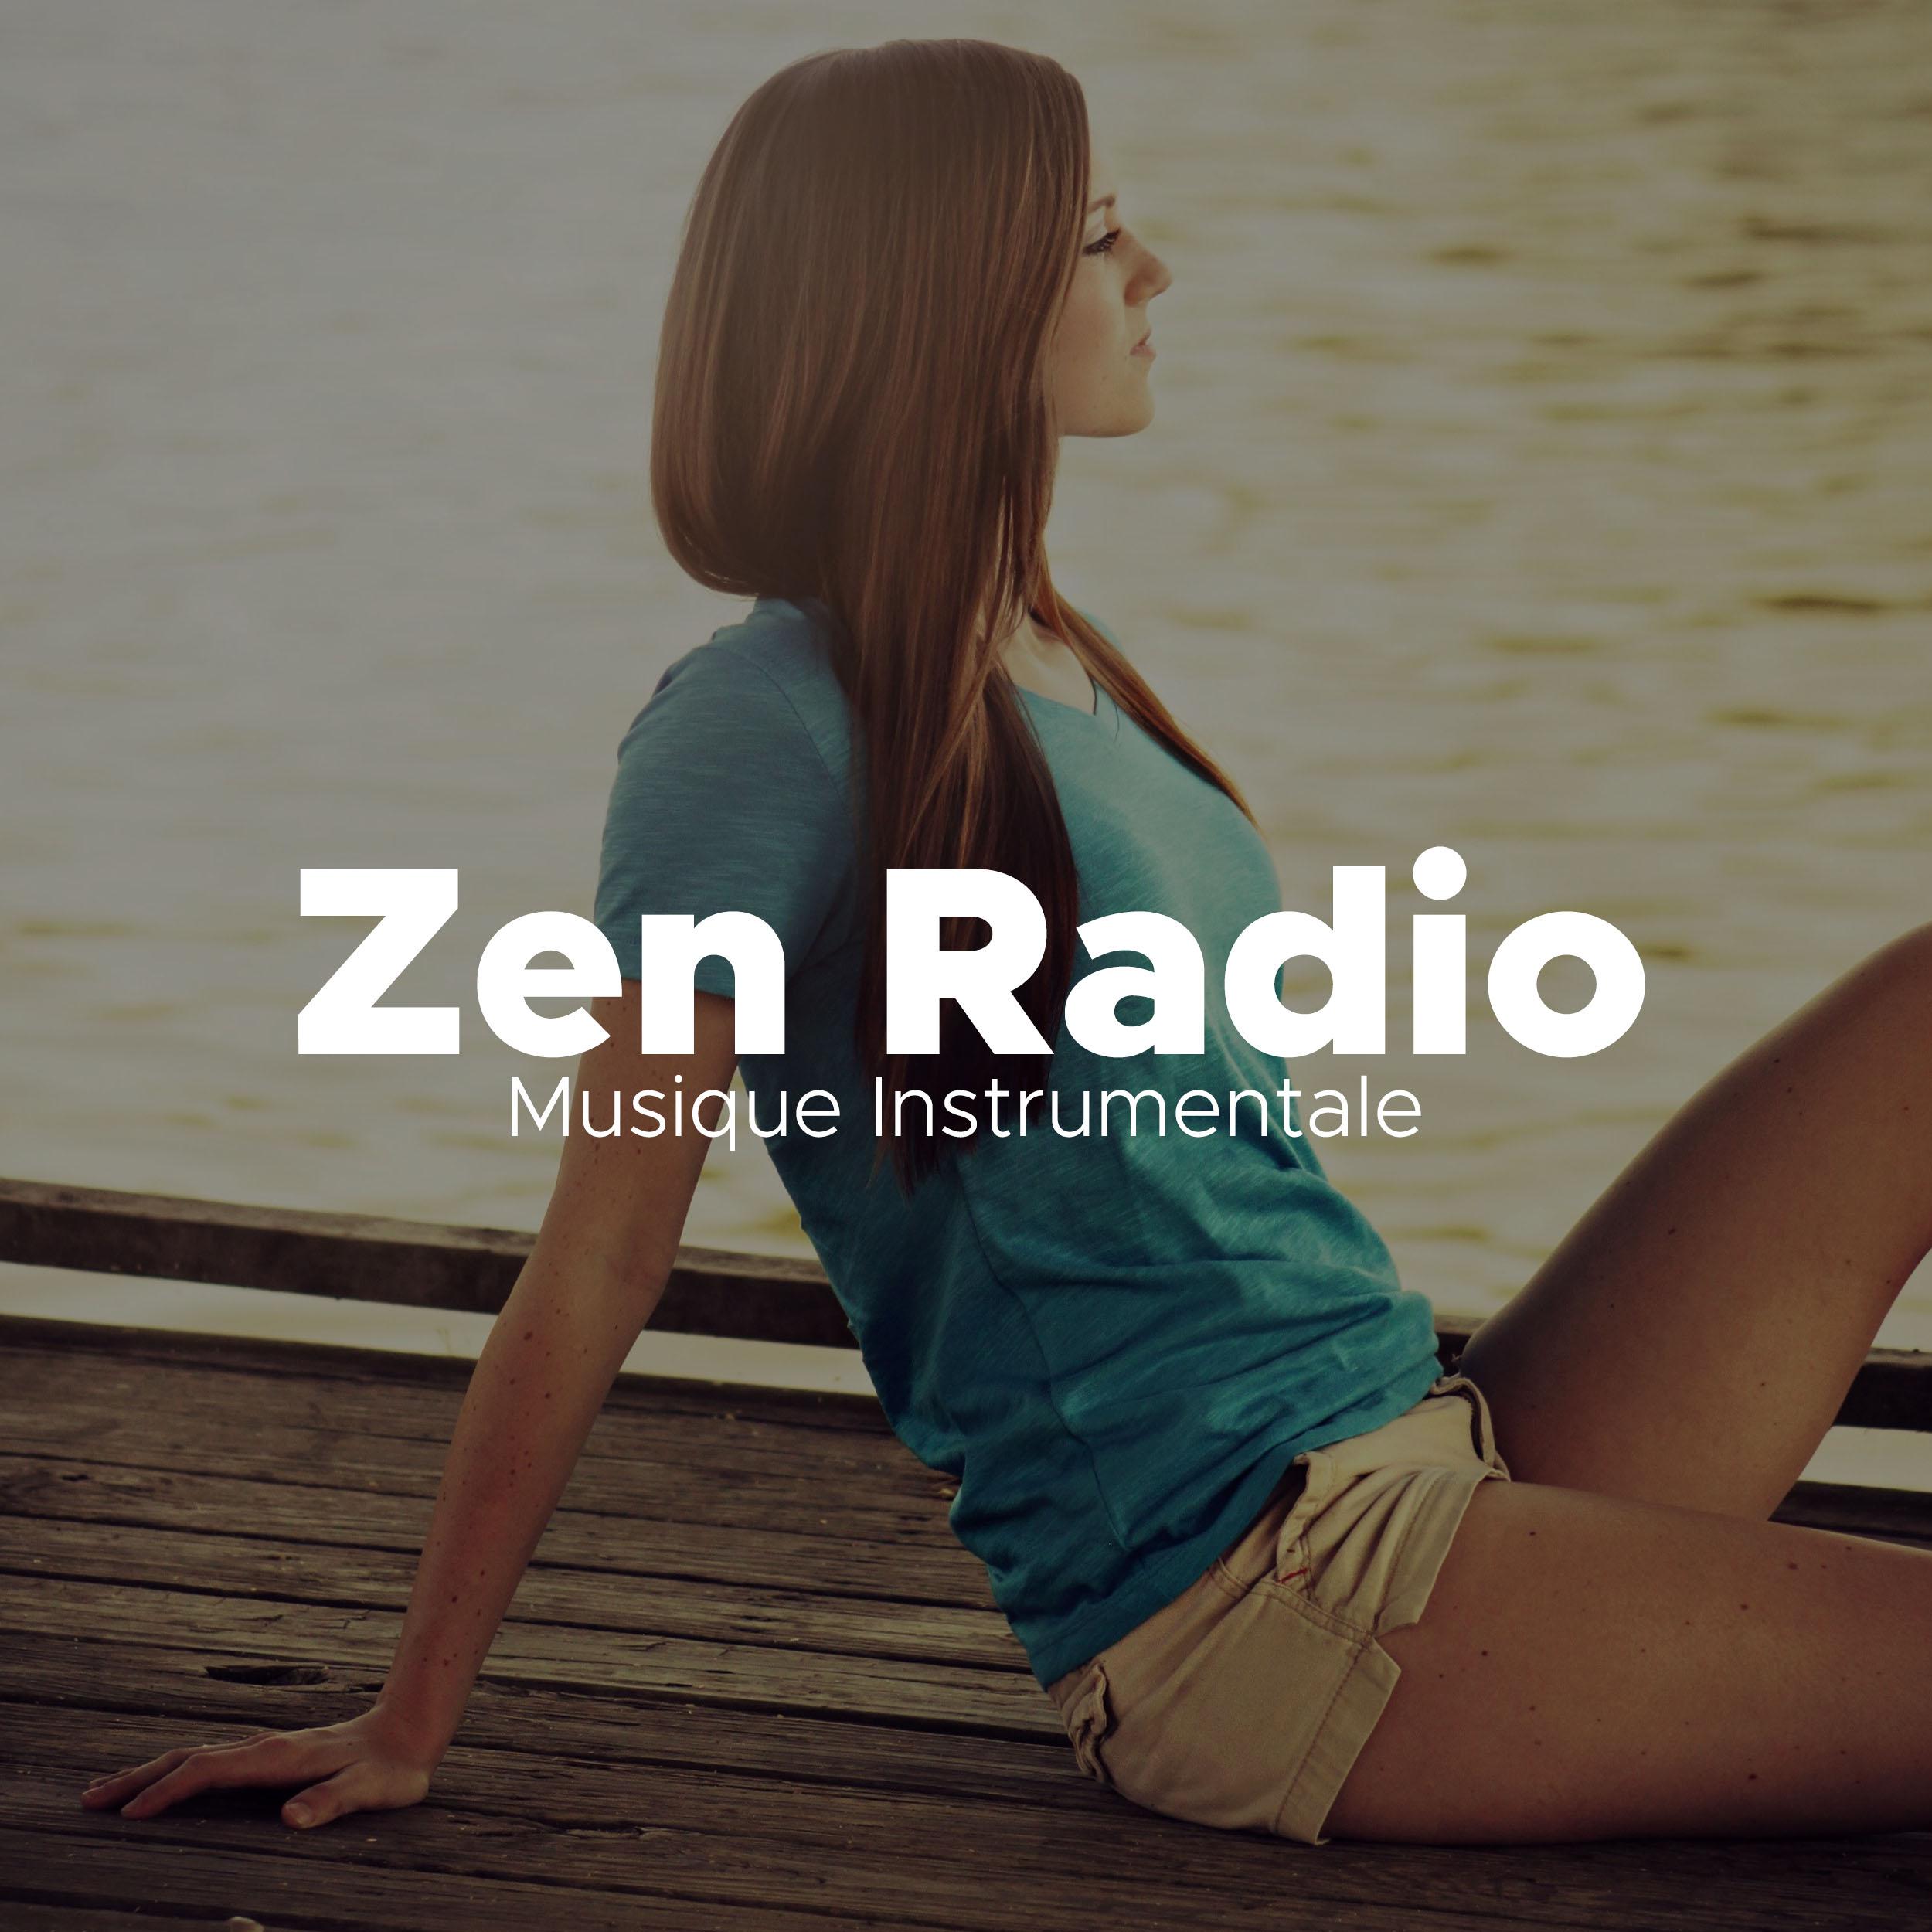 Zen Radio - Musique Instrumentale